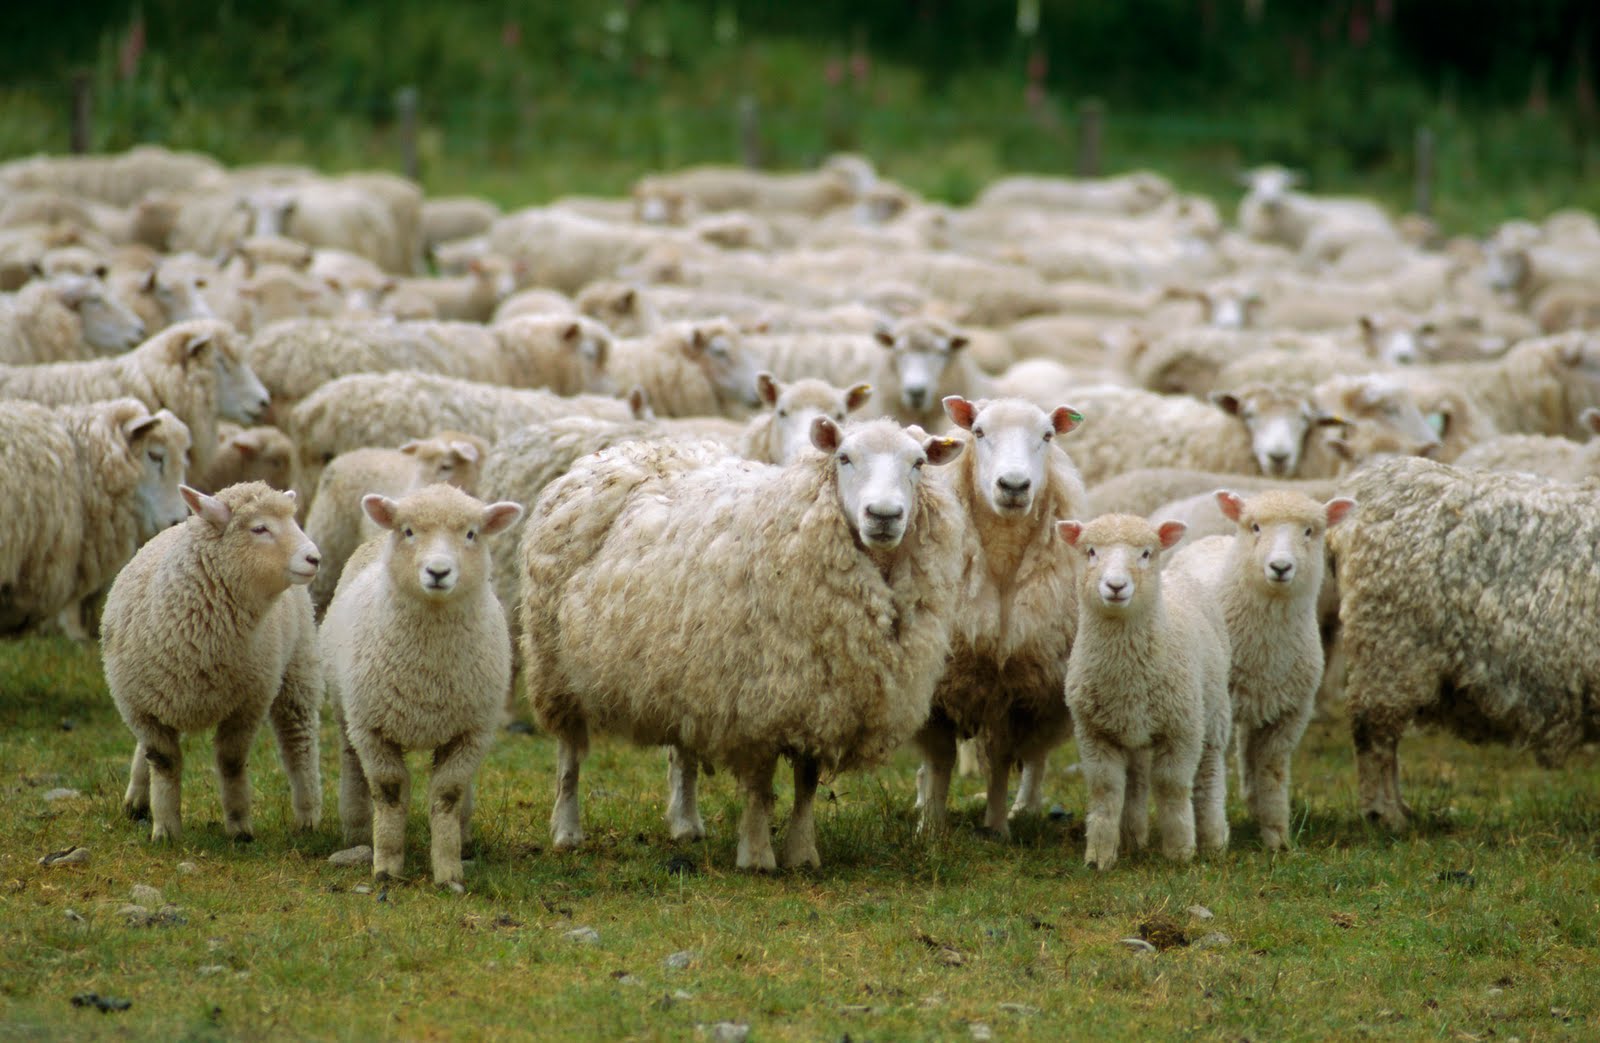 Descrição, coloração e características comportamentais das ovelhas da montanha Altai